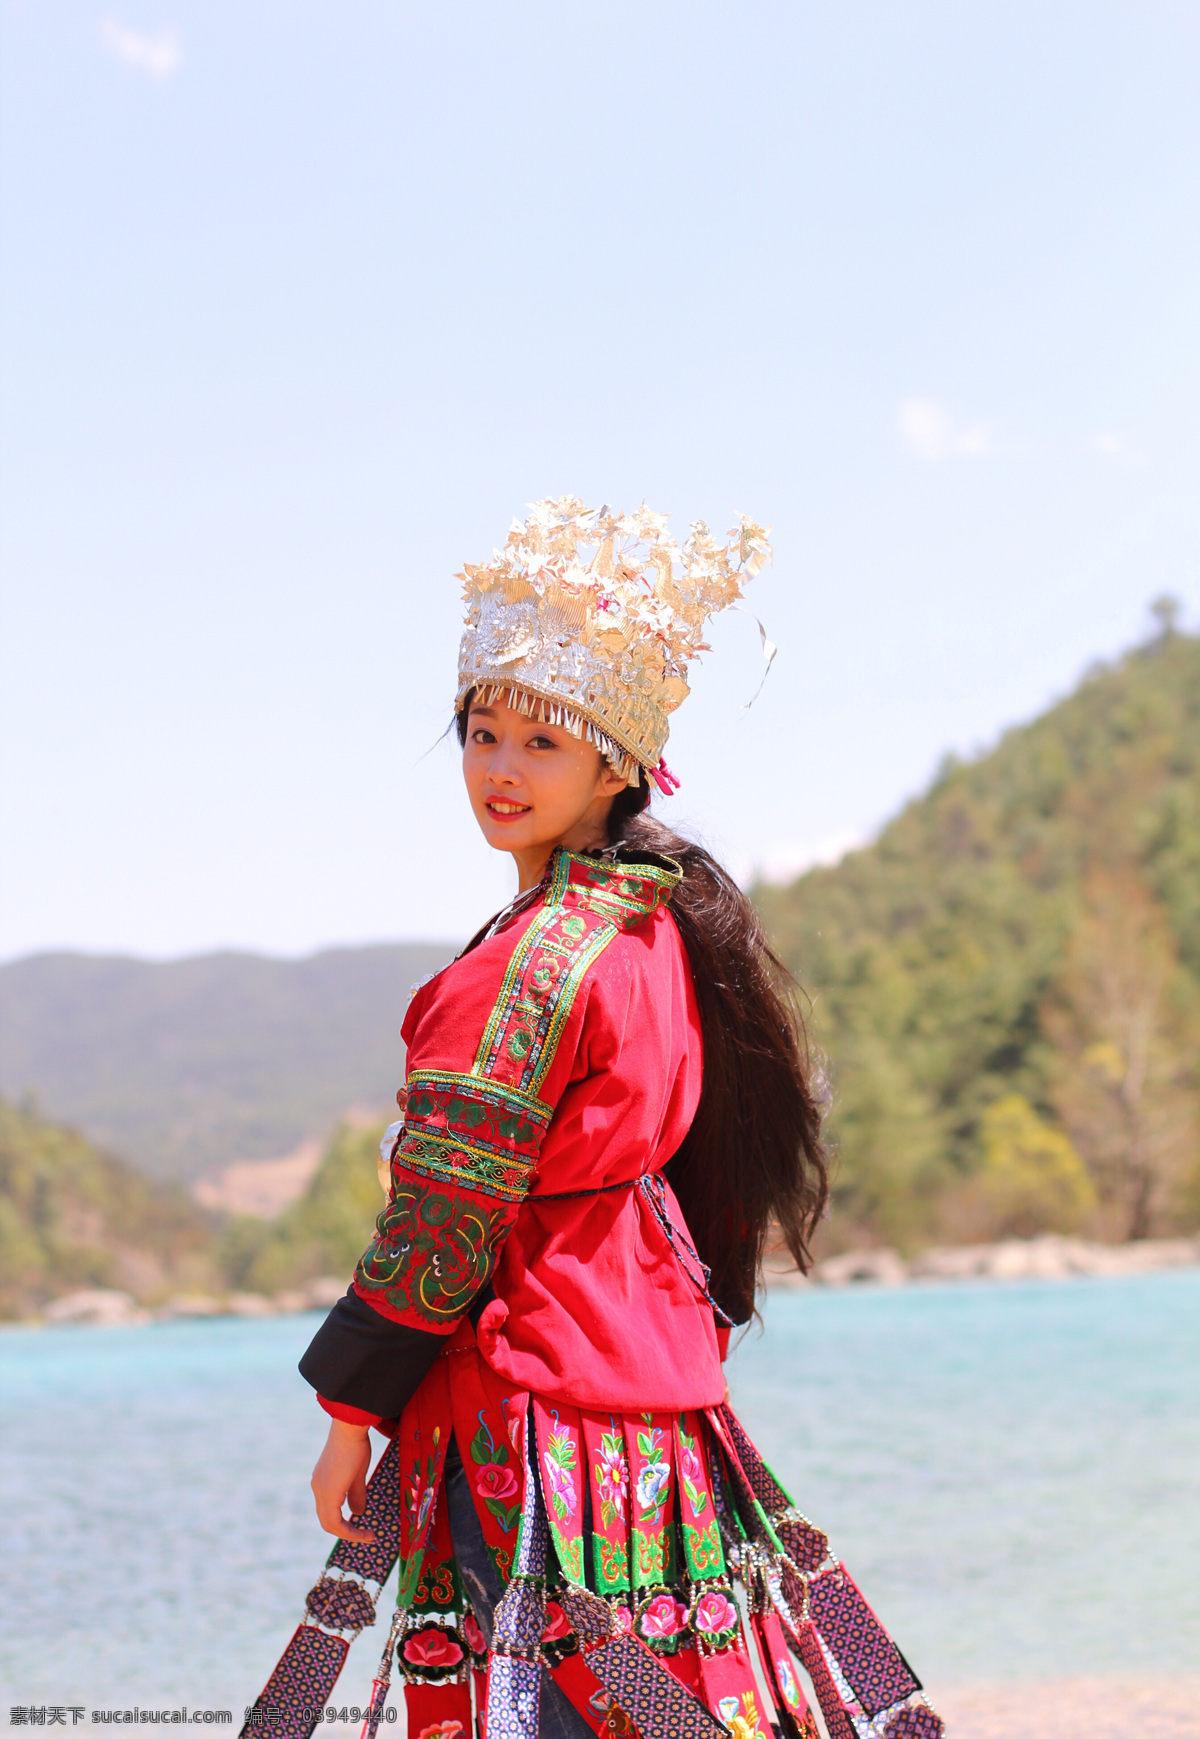 壮族姑娘 壮族 姑娘 民族 服装 传统 美女 高清图片 人物图库 人物摄影